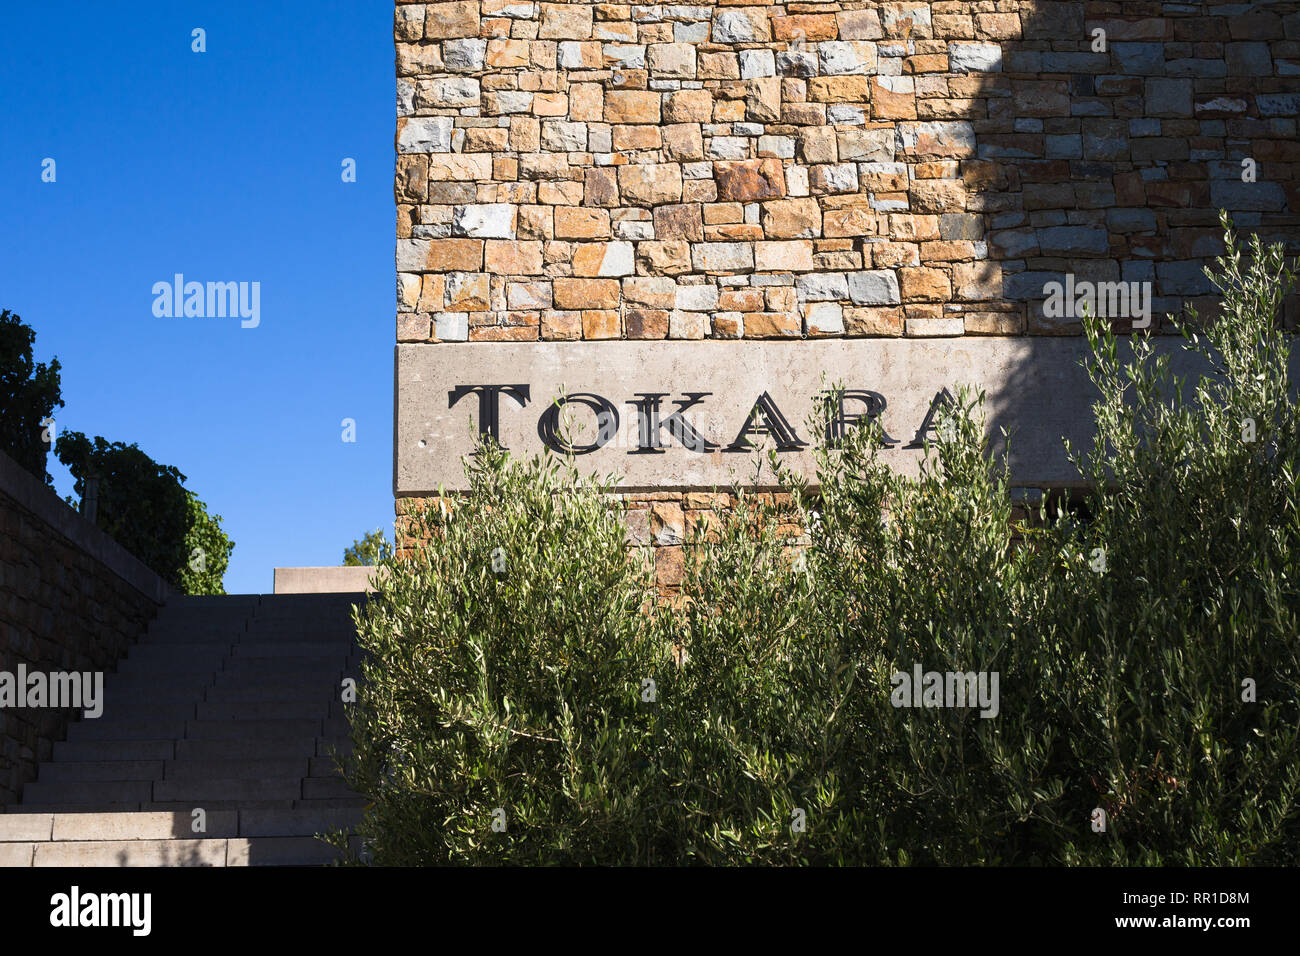 Tokara cantina di vino o station wagon nome metallico sul rivestimento in pietra di un edificio in corrispondenza dell'ingresso nel Cape Winelands, Sud Africa Foto Stock